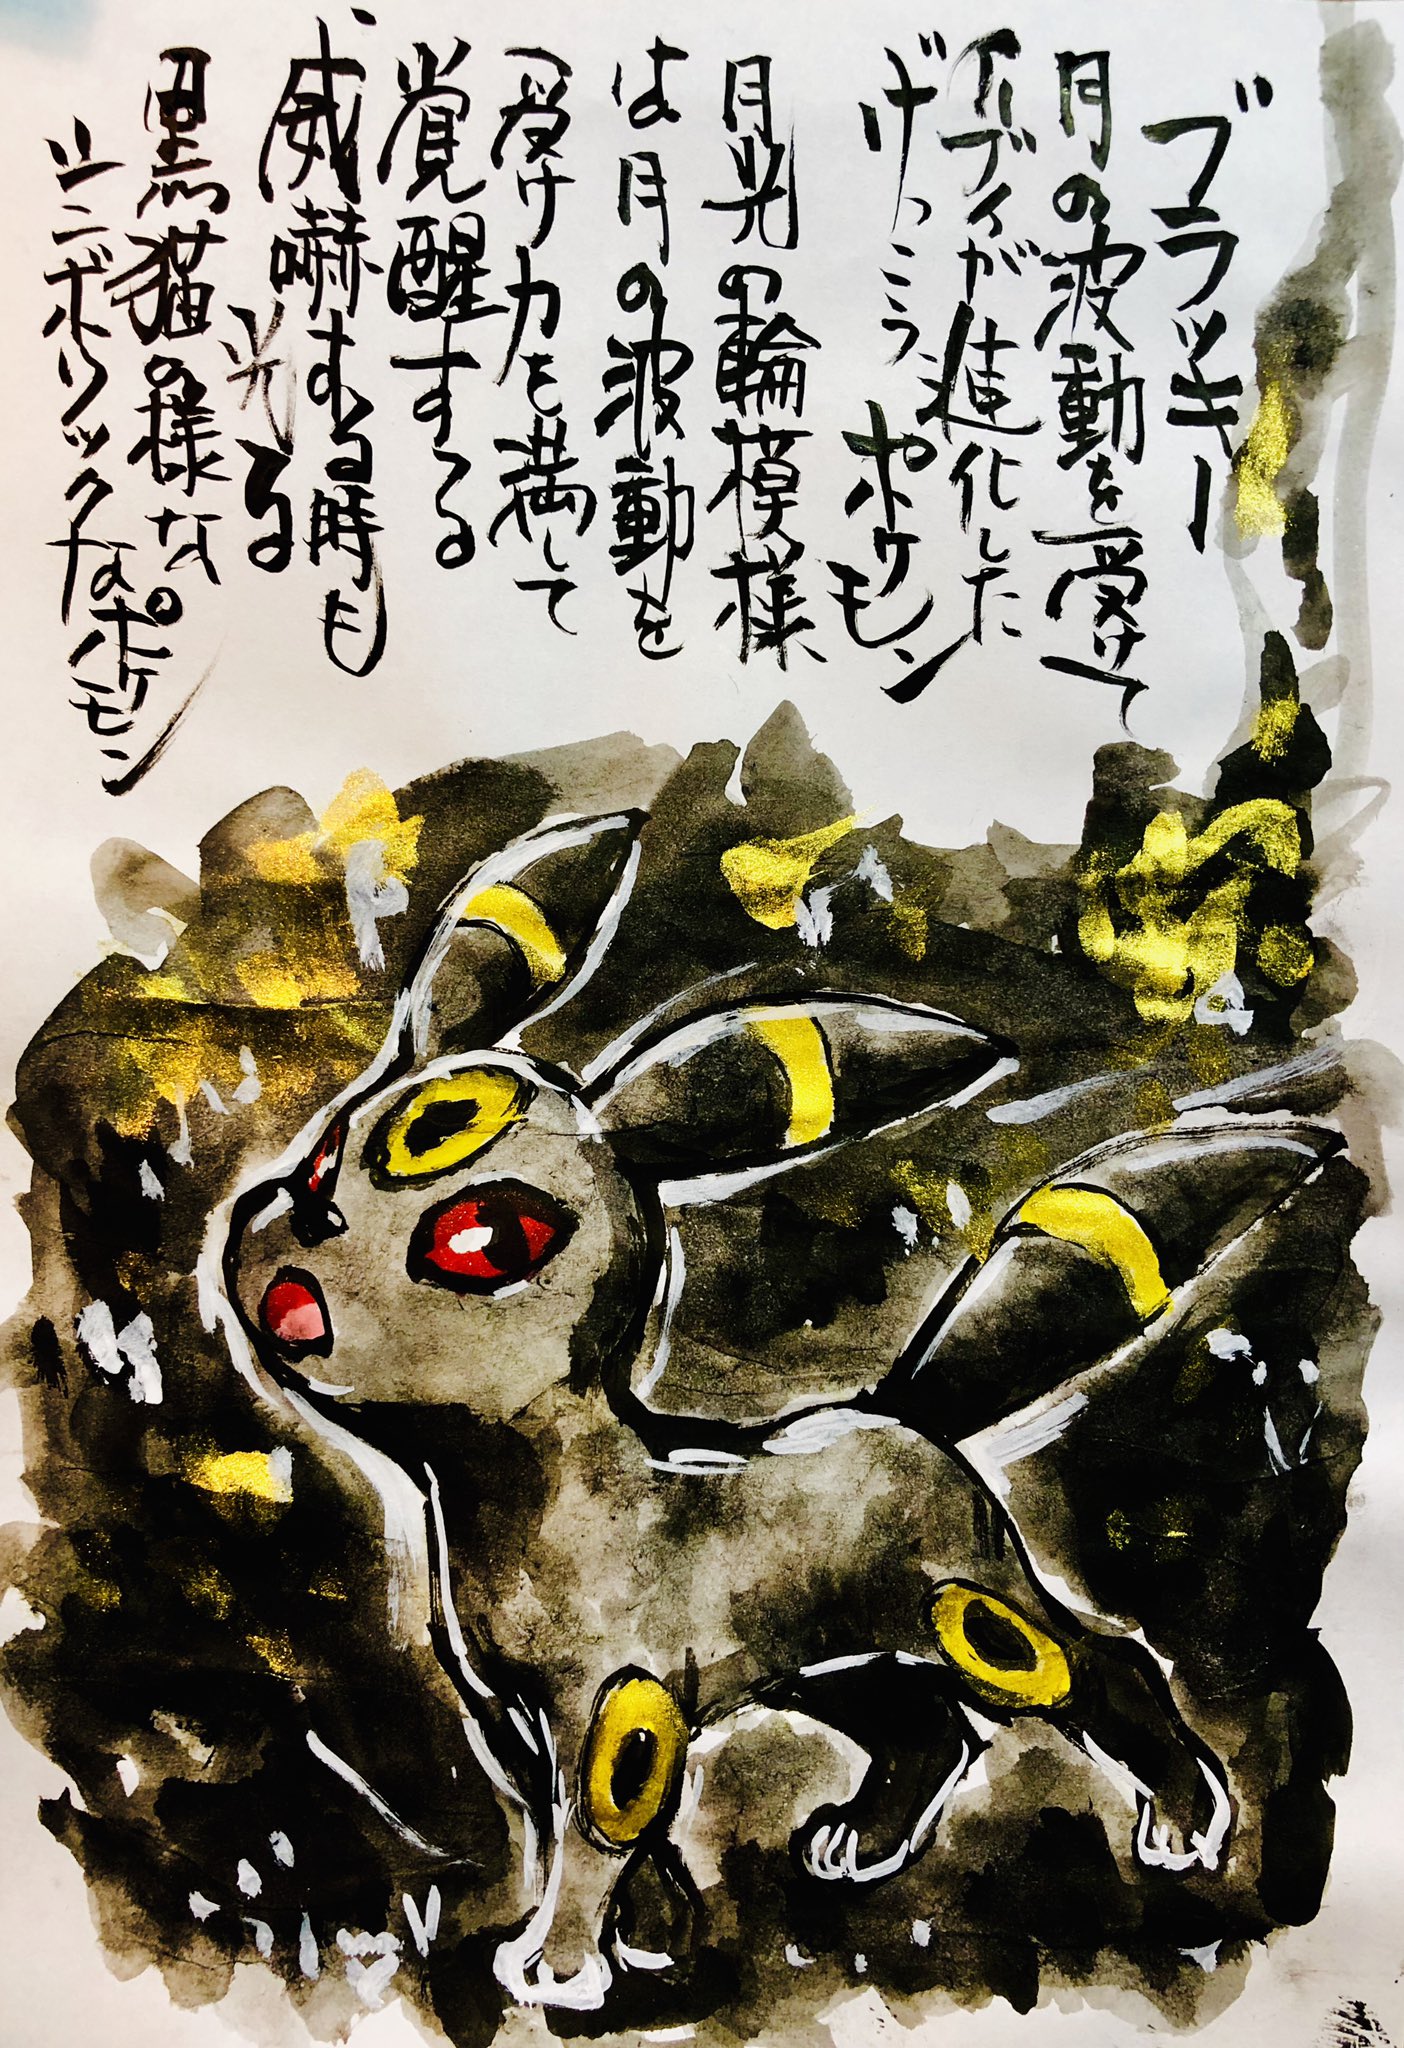 Aki Shimamoto ポケモン絵師休憩中エネルギーアートクリエーター 筆ペンでポケモンを描く ブラッキー 月の波動を受けてイーブイが進化したげっこうポケモン 月光の輪模様は月の波動を受け力を満して覚醒する 威嚇するときも光る 黒猫の様なシンボリックな